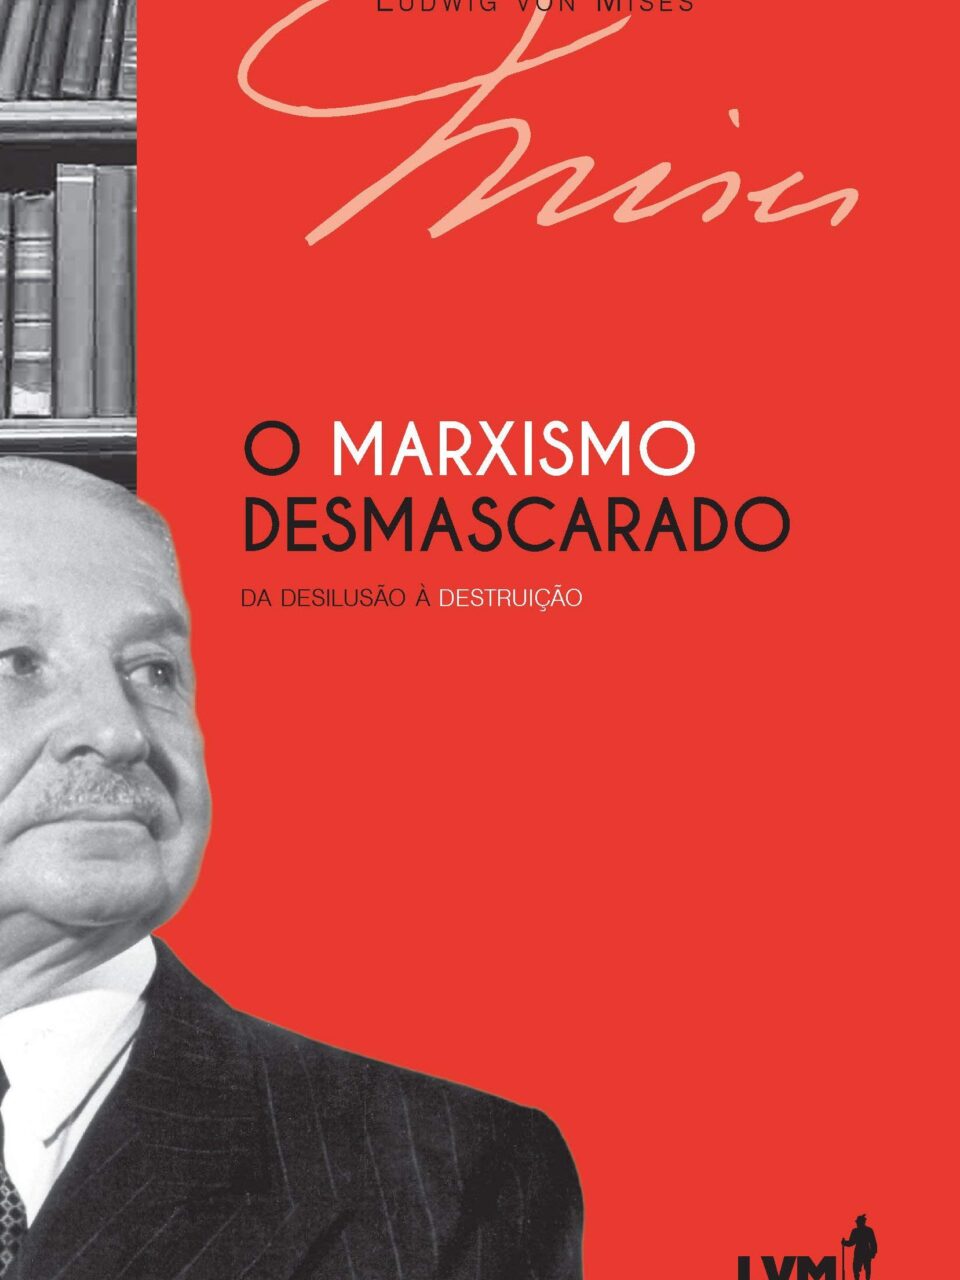 O marxismo desmascarado - Da desilusão à destruição - Ludwig von Mises